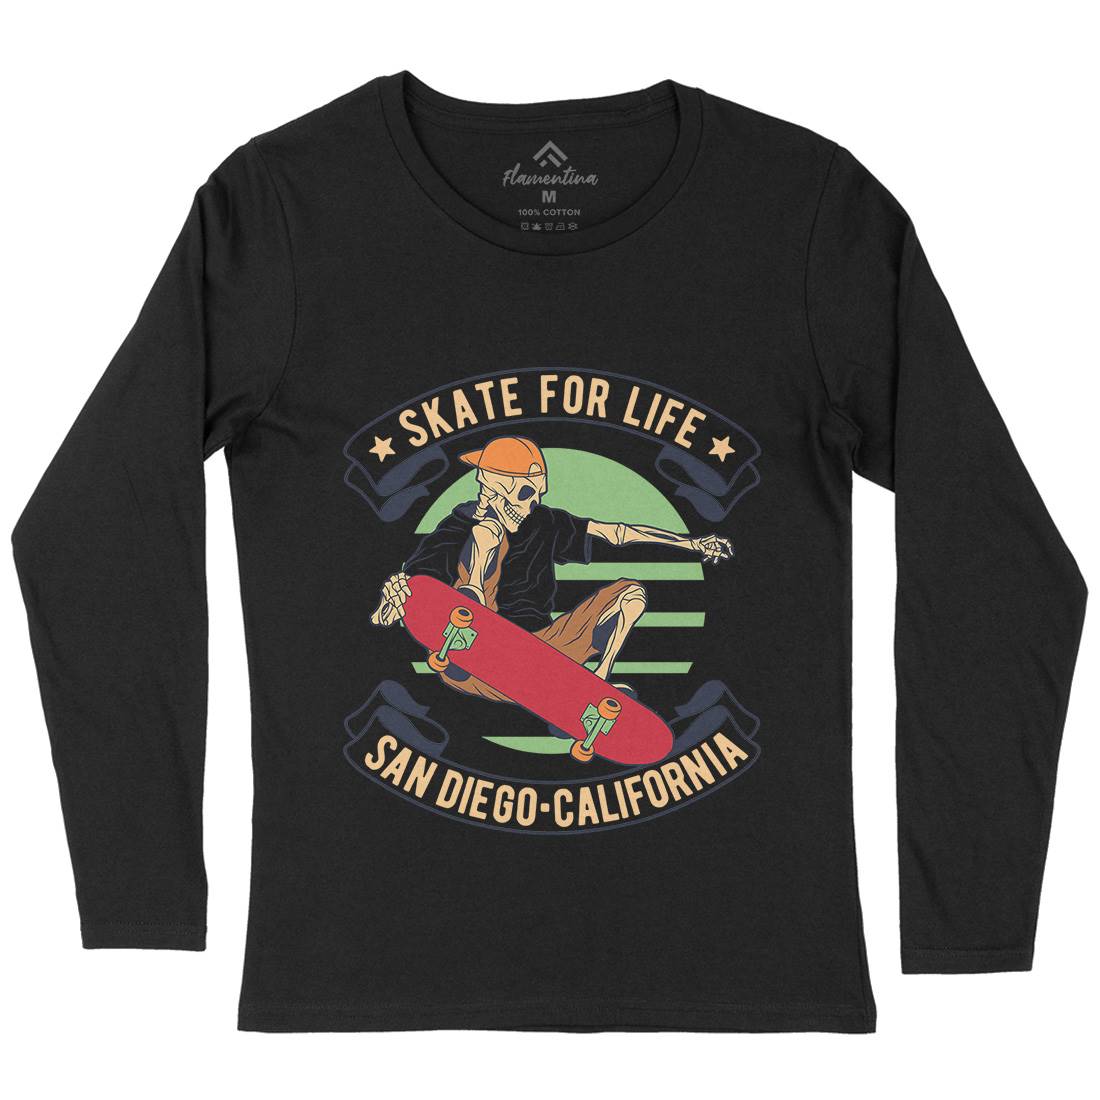 For Life Womens Long Sleeve T-Shirt Skate D970